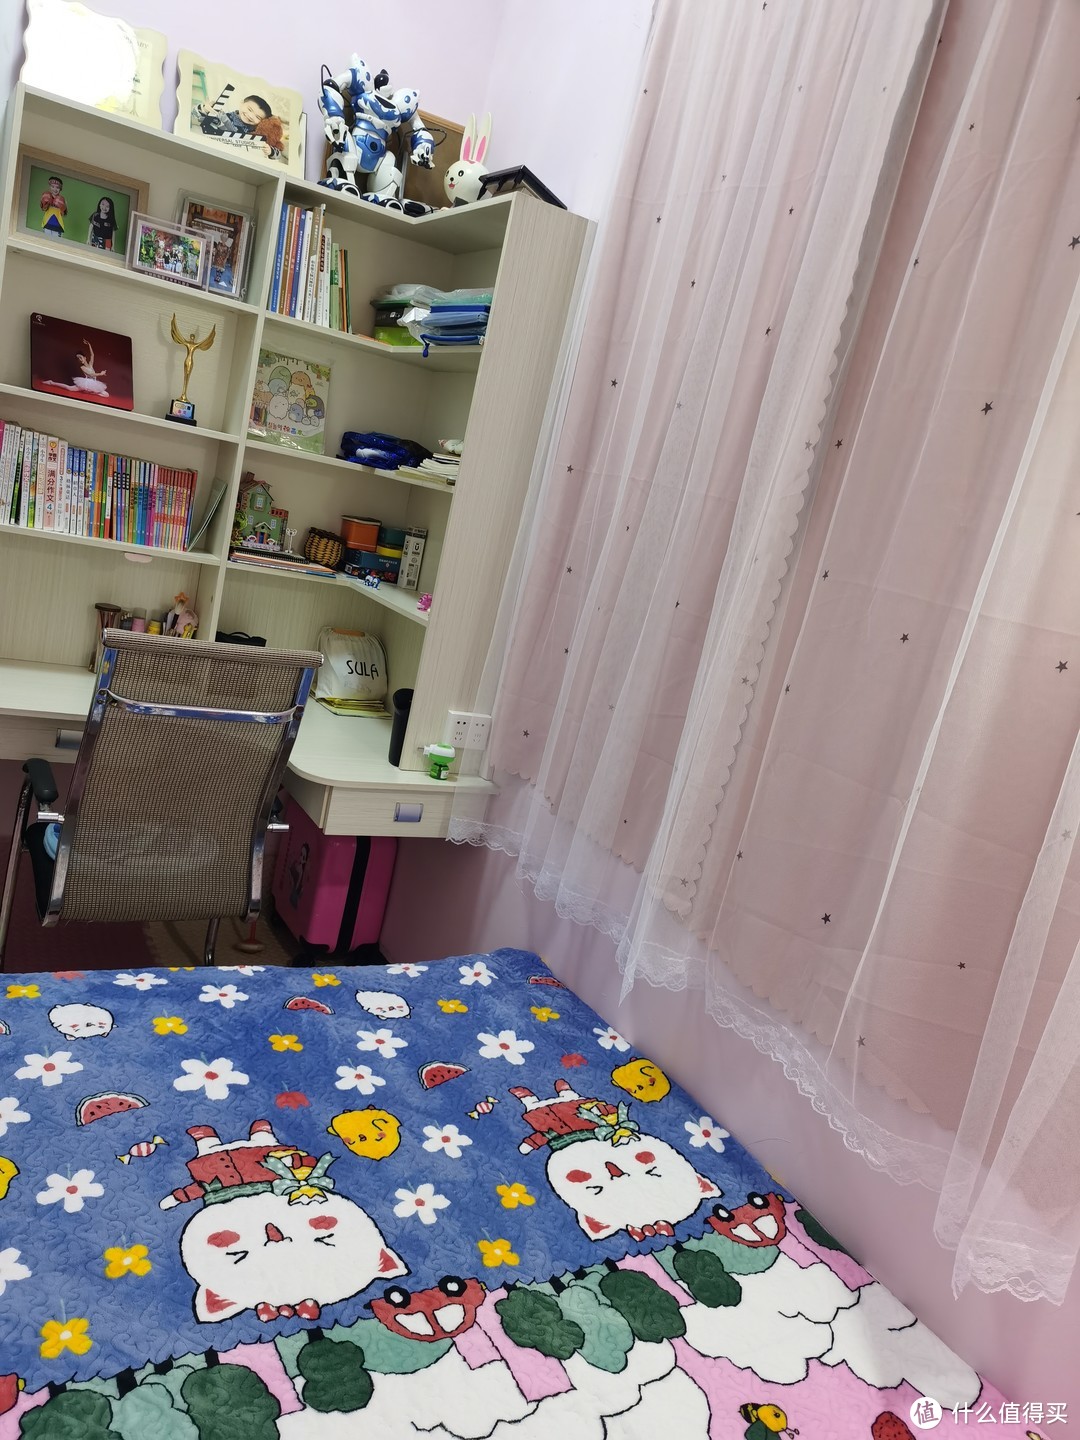 用书房给孩子改造的儿童房